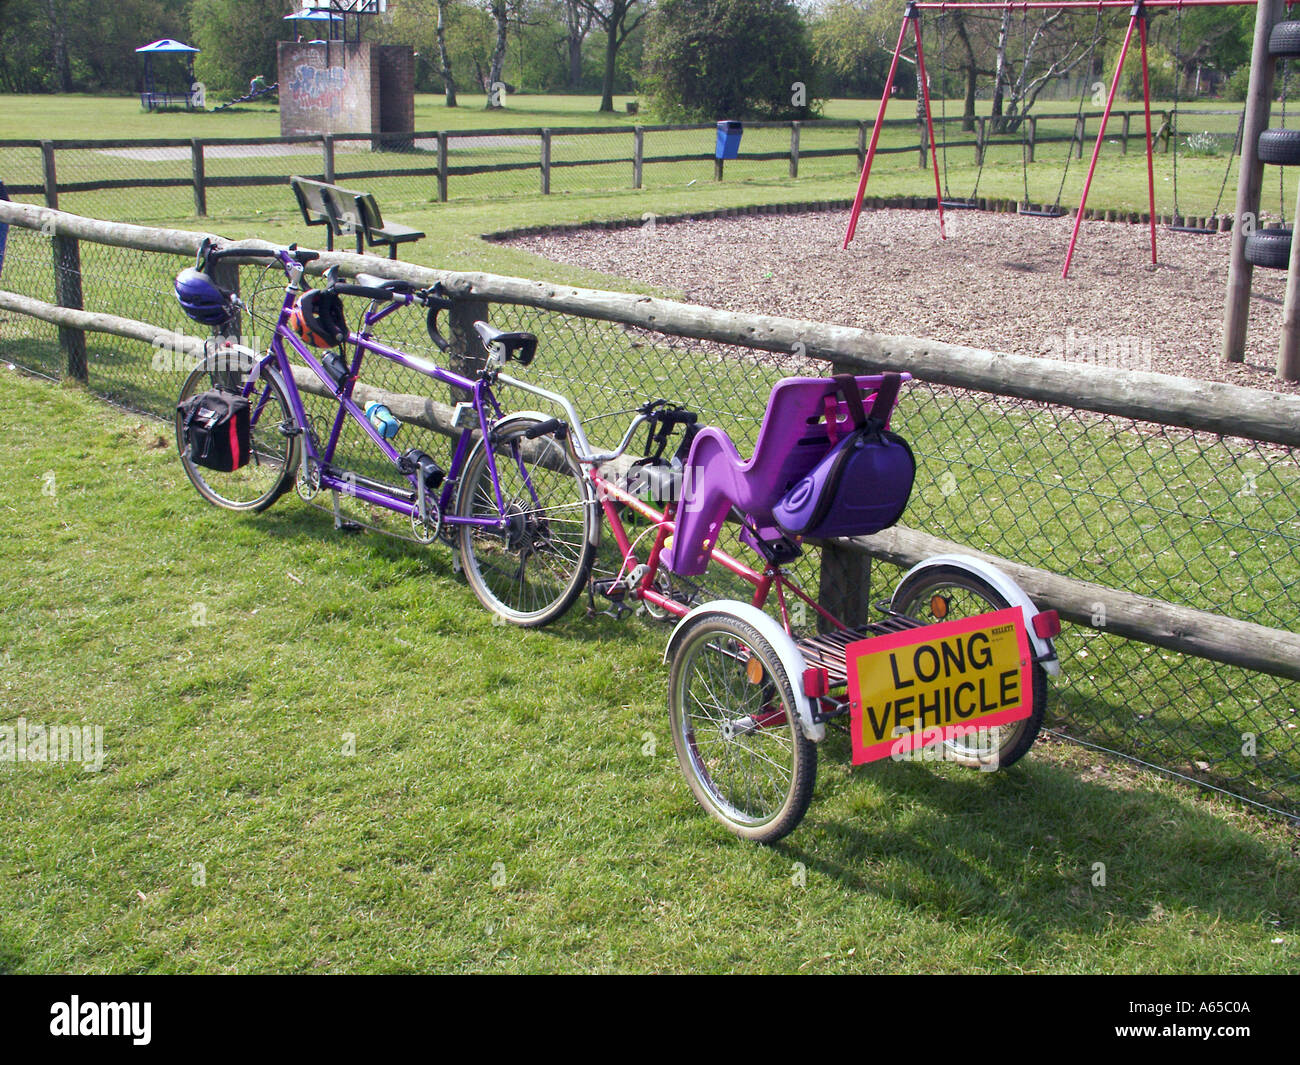 Tandem vélo long véhicule signe sur le vélo famille vélo vélo siège enfant garé à côté de l'aire de jeux pour enfants balançoires le jour d'été à Brentwood Essex Angleterre Banque D'Images